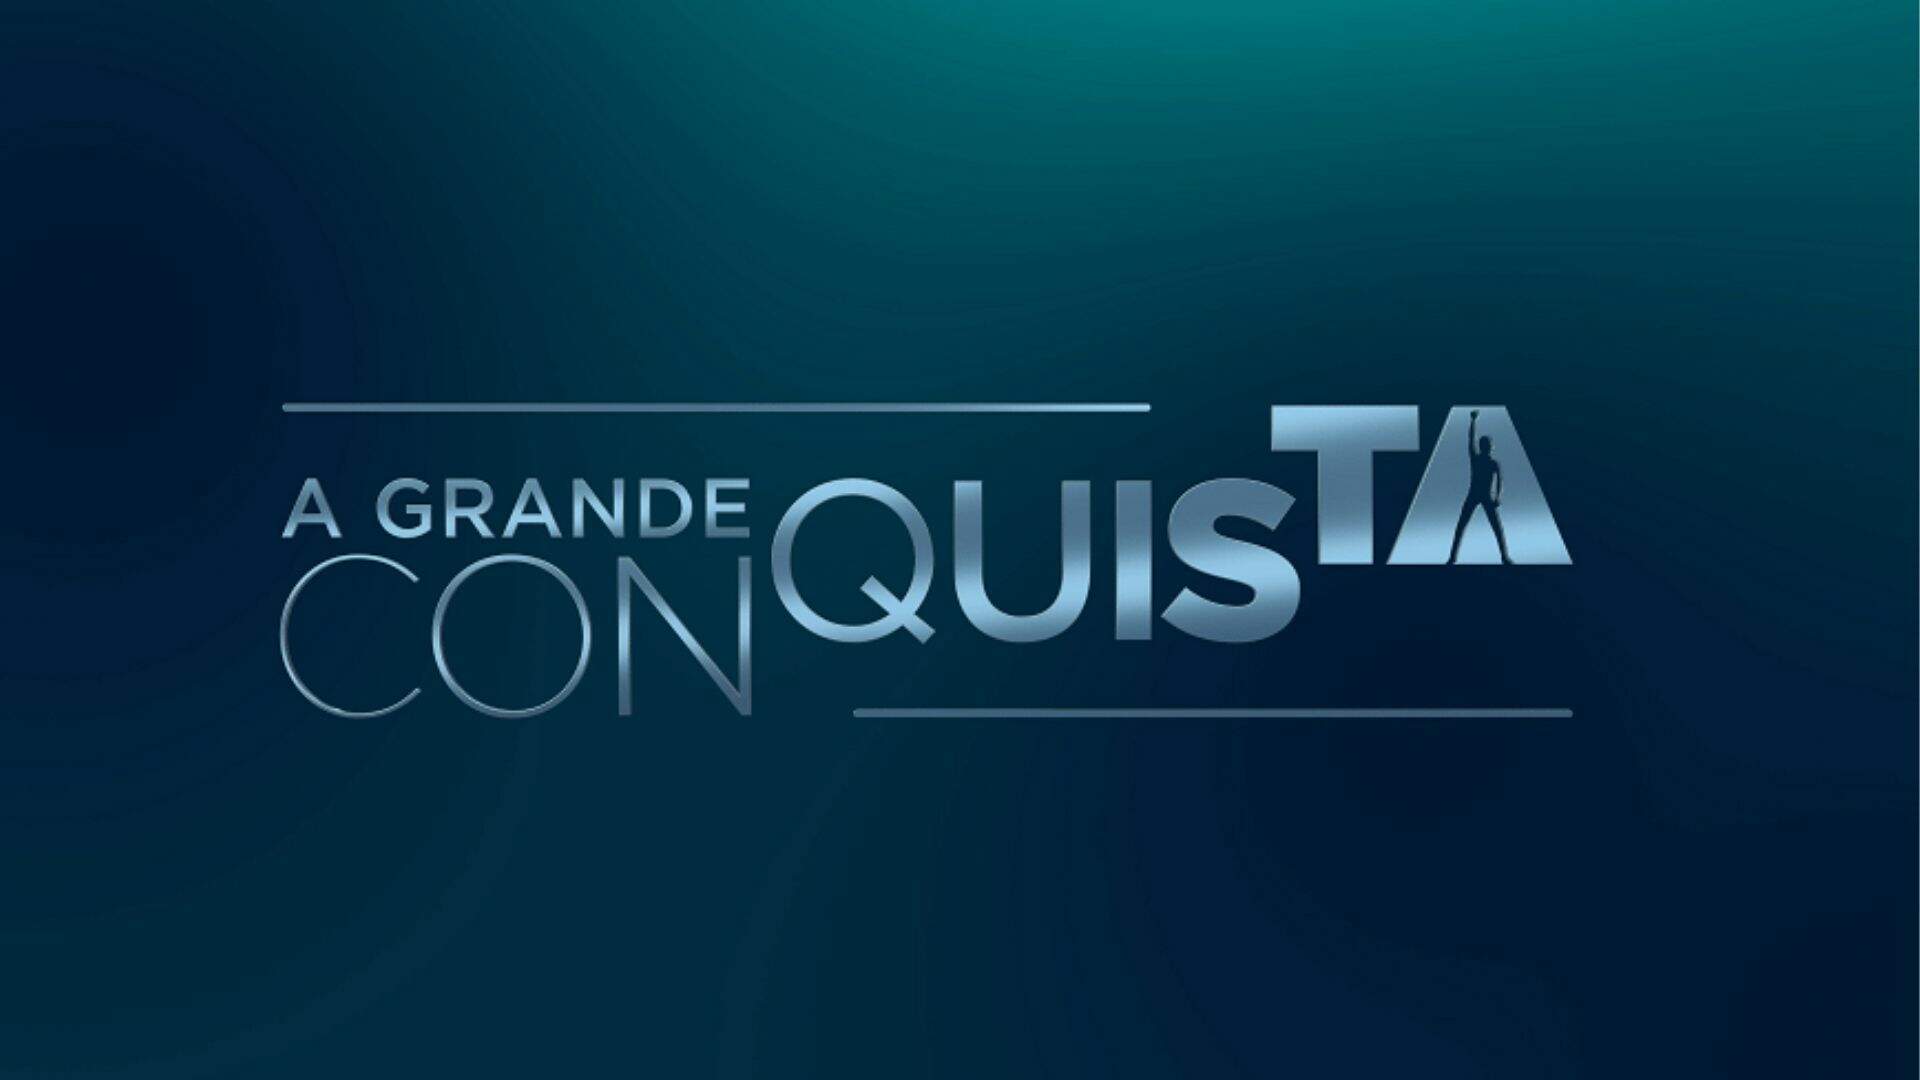 A Grande Conquista: Votação tensa! Veja quem disputará a Prova da Virada nesta quarta (07) - Metropolitana FM